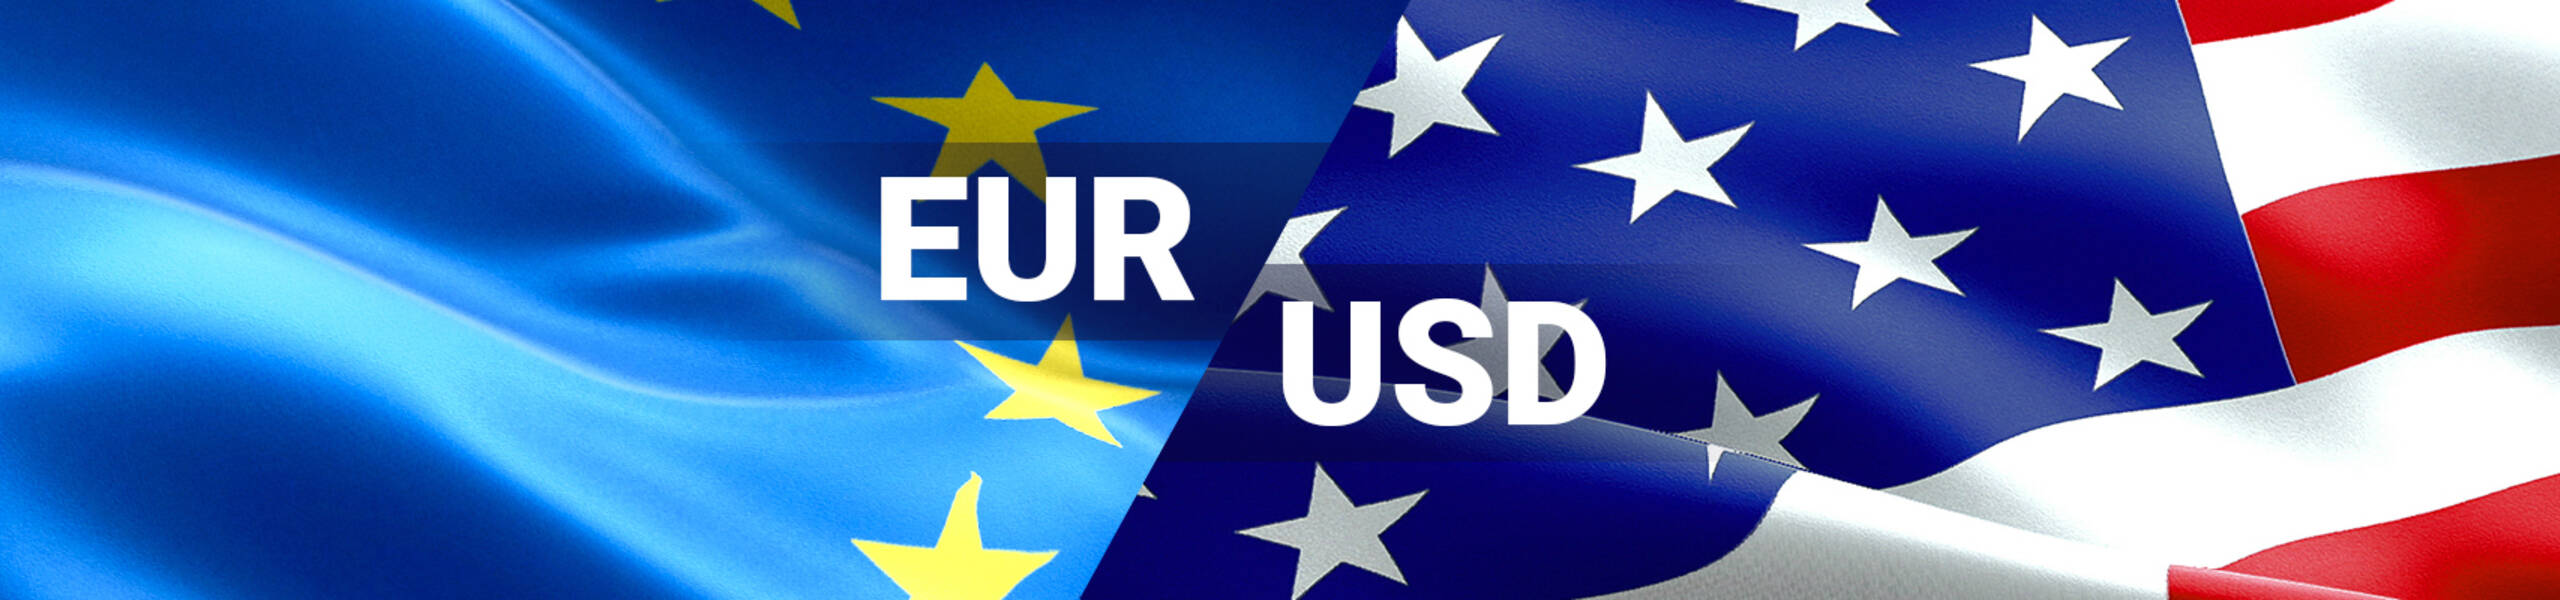 تحليل زوج اليورو دولار اليوم 16-4-2018